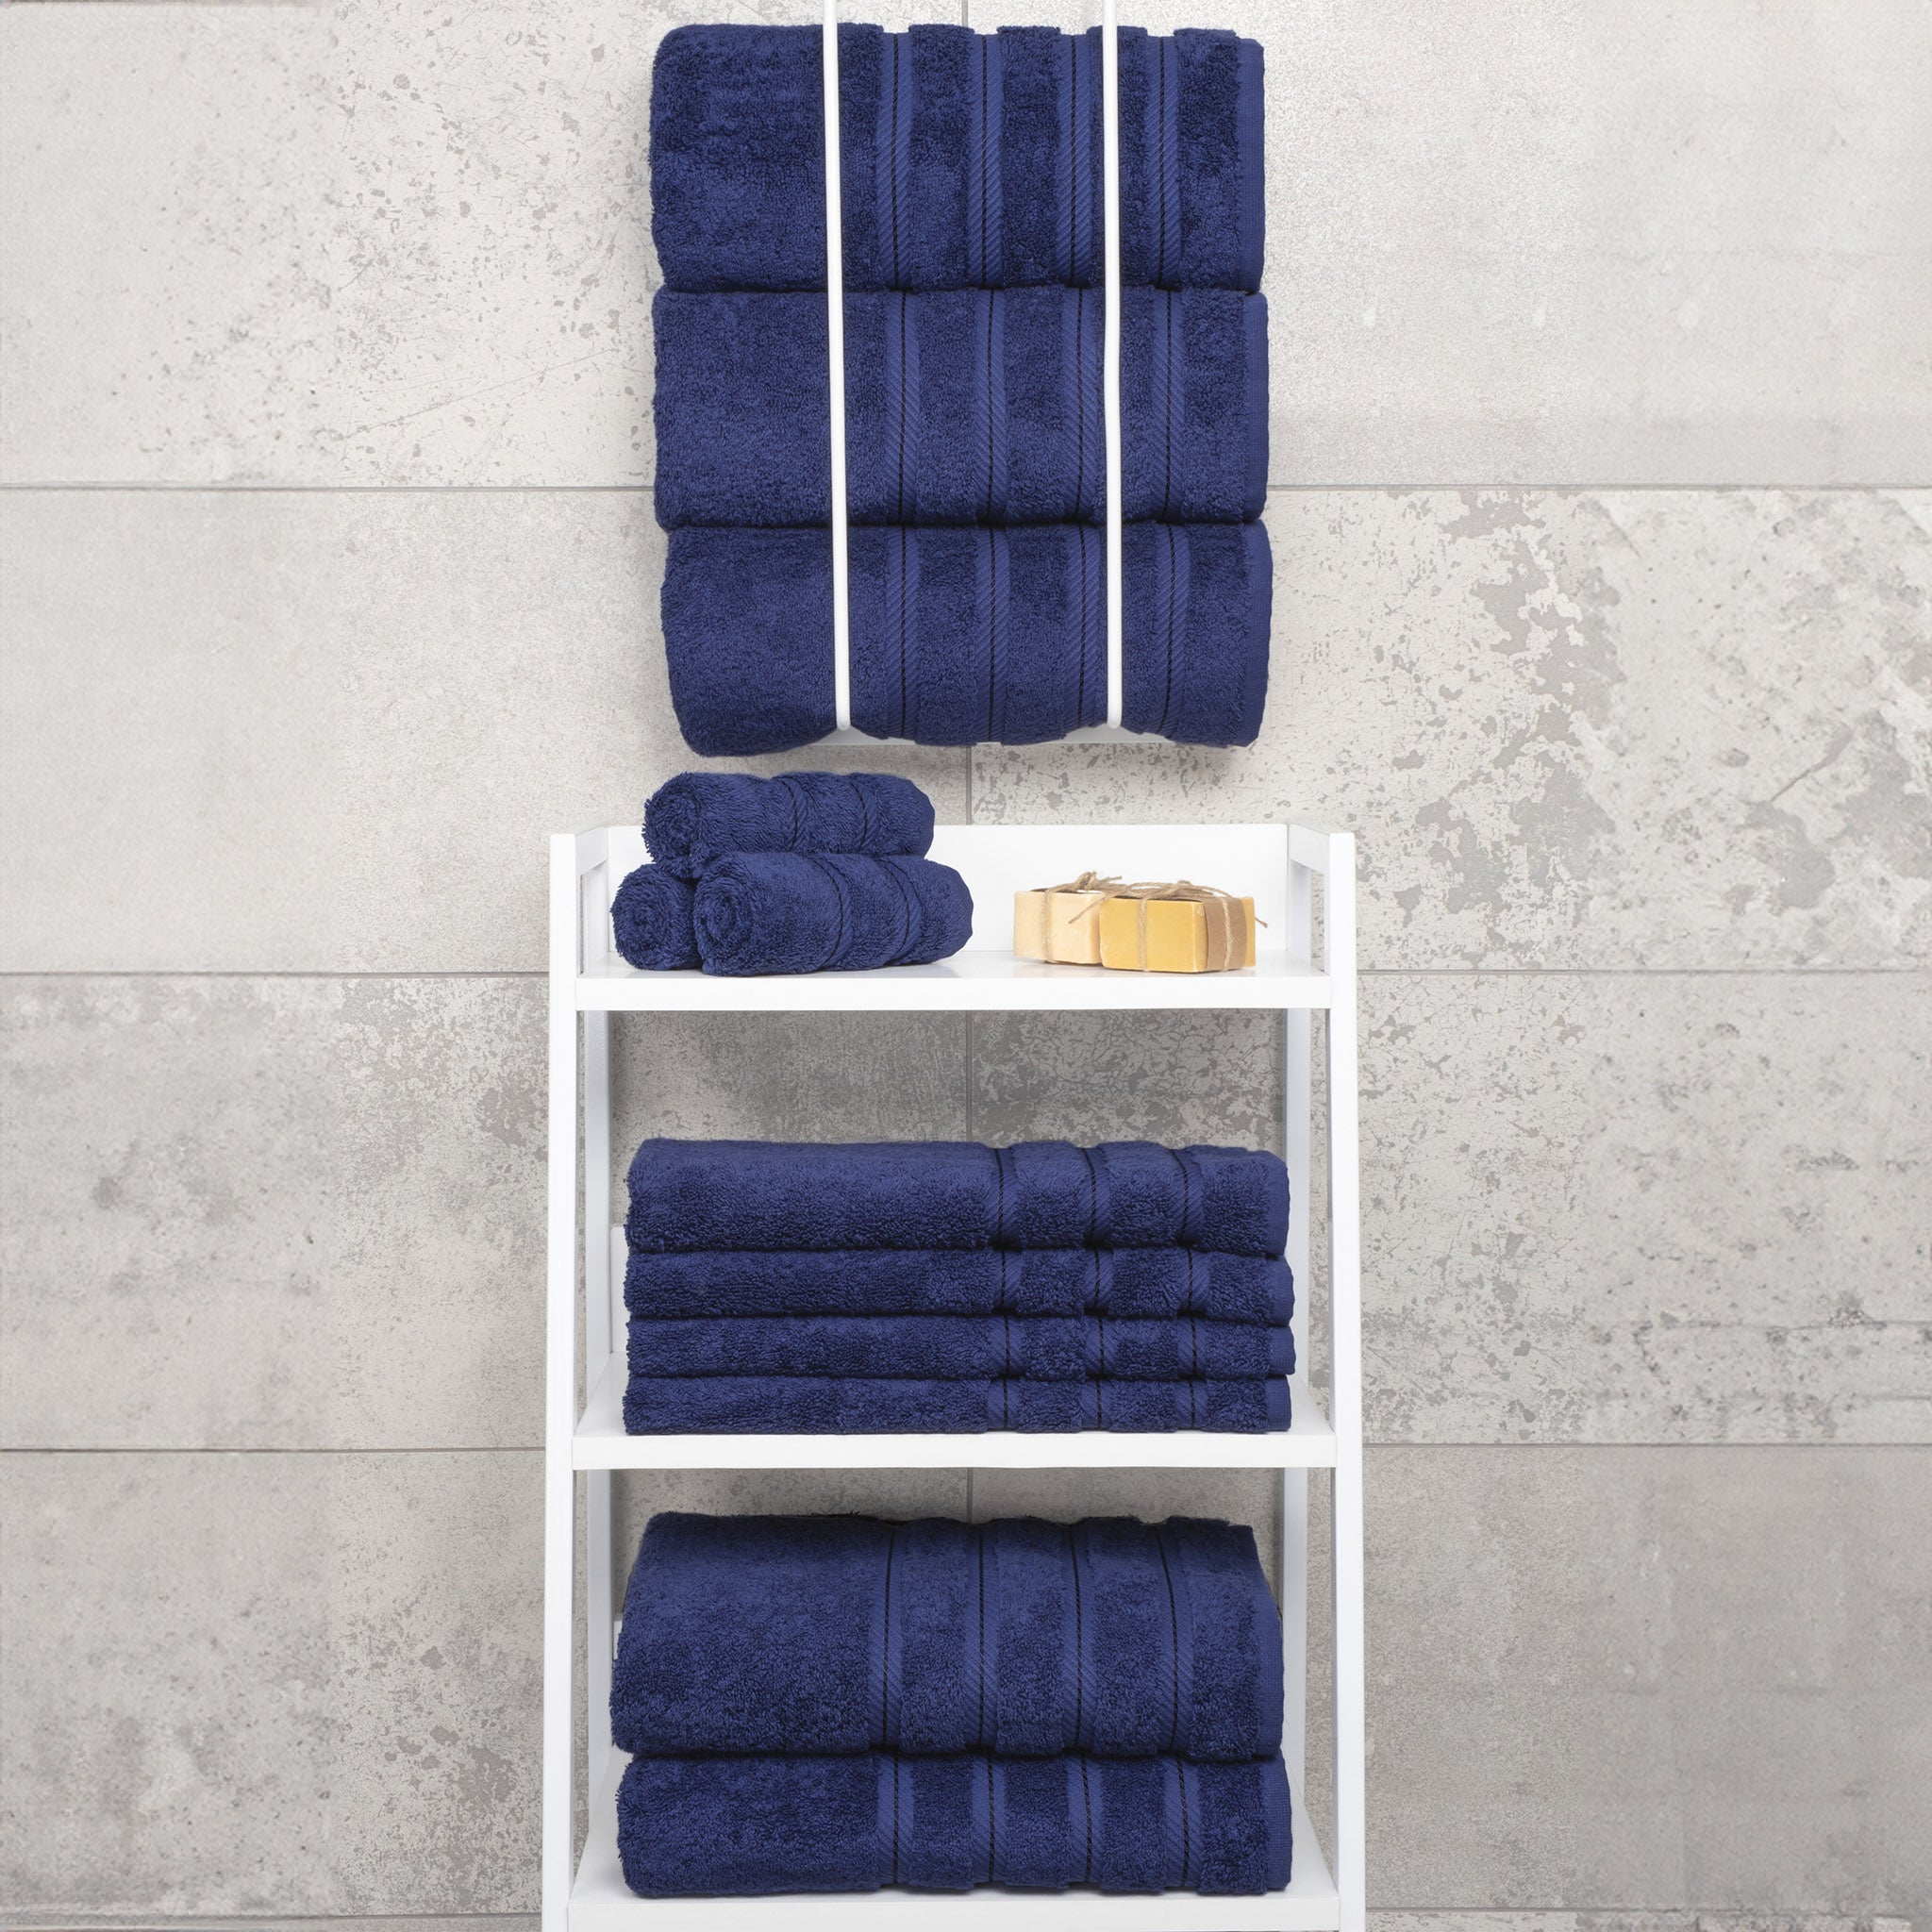 American Soft Linen 100% Turkish Cotton 4 Pack Bath Towel Set Wholesale navy-blue-7